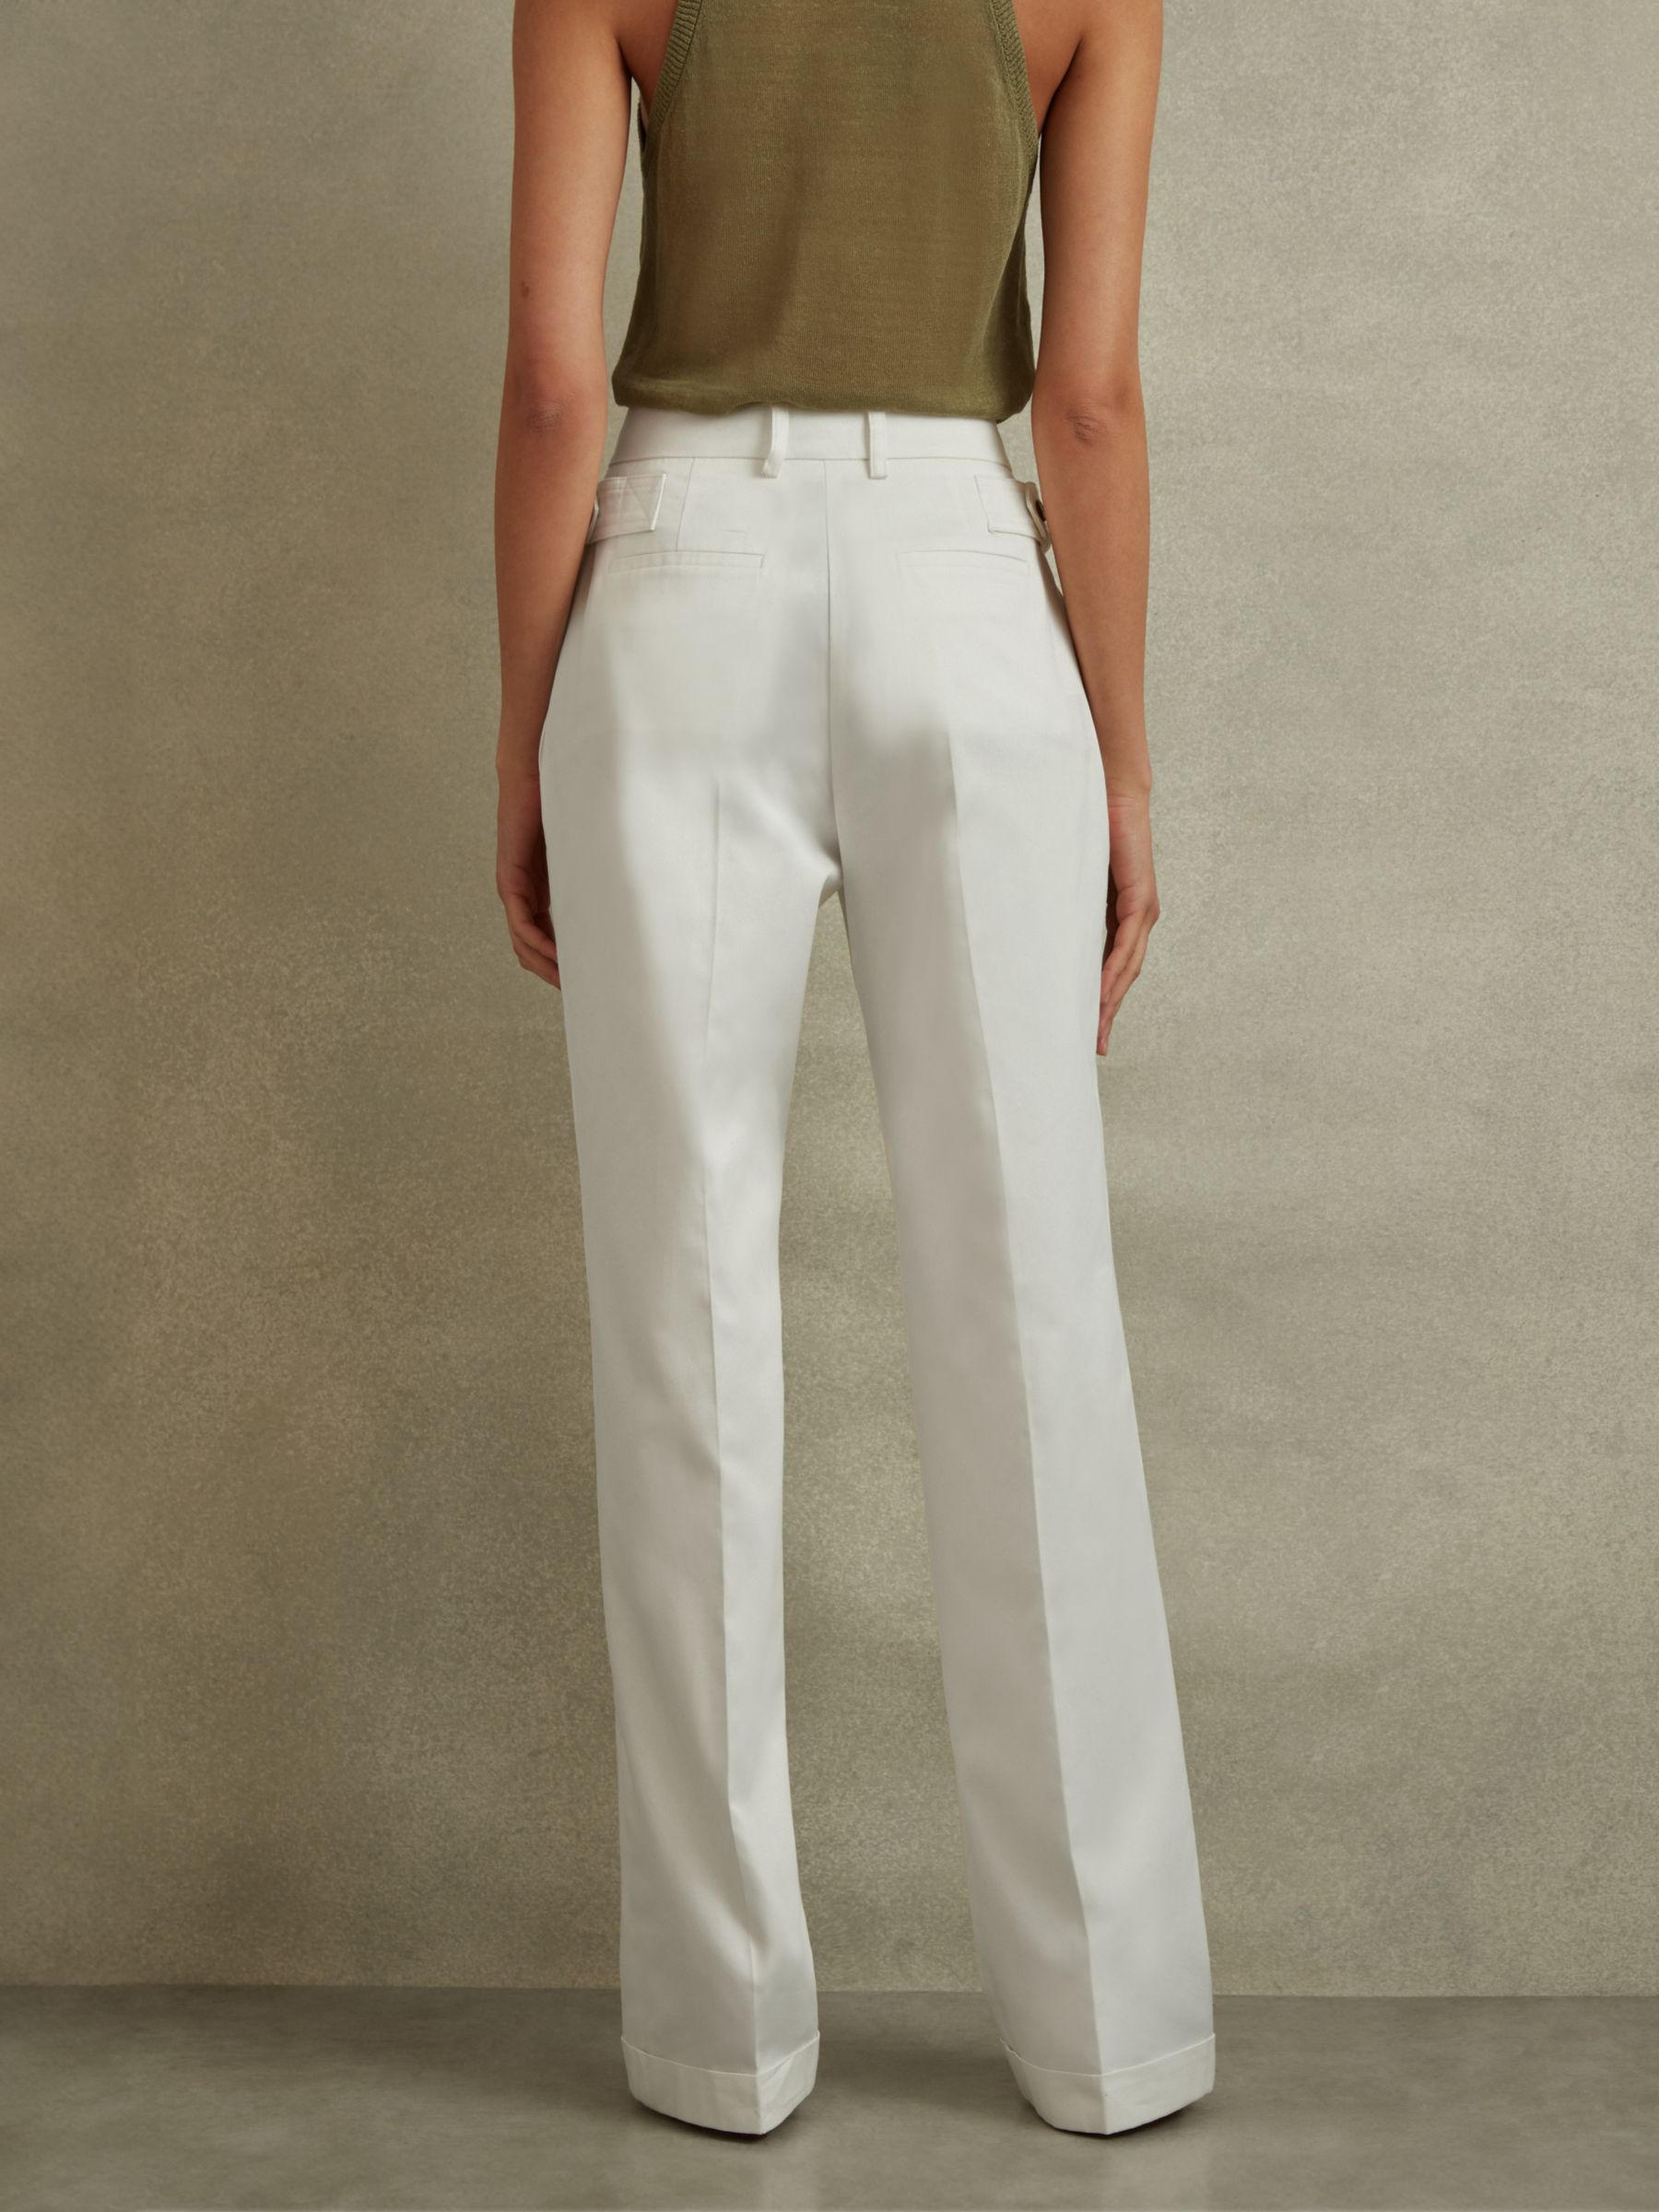 Reiss Harper Wide Leg Cotton Suit Trousers, White, 6R